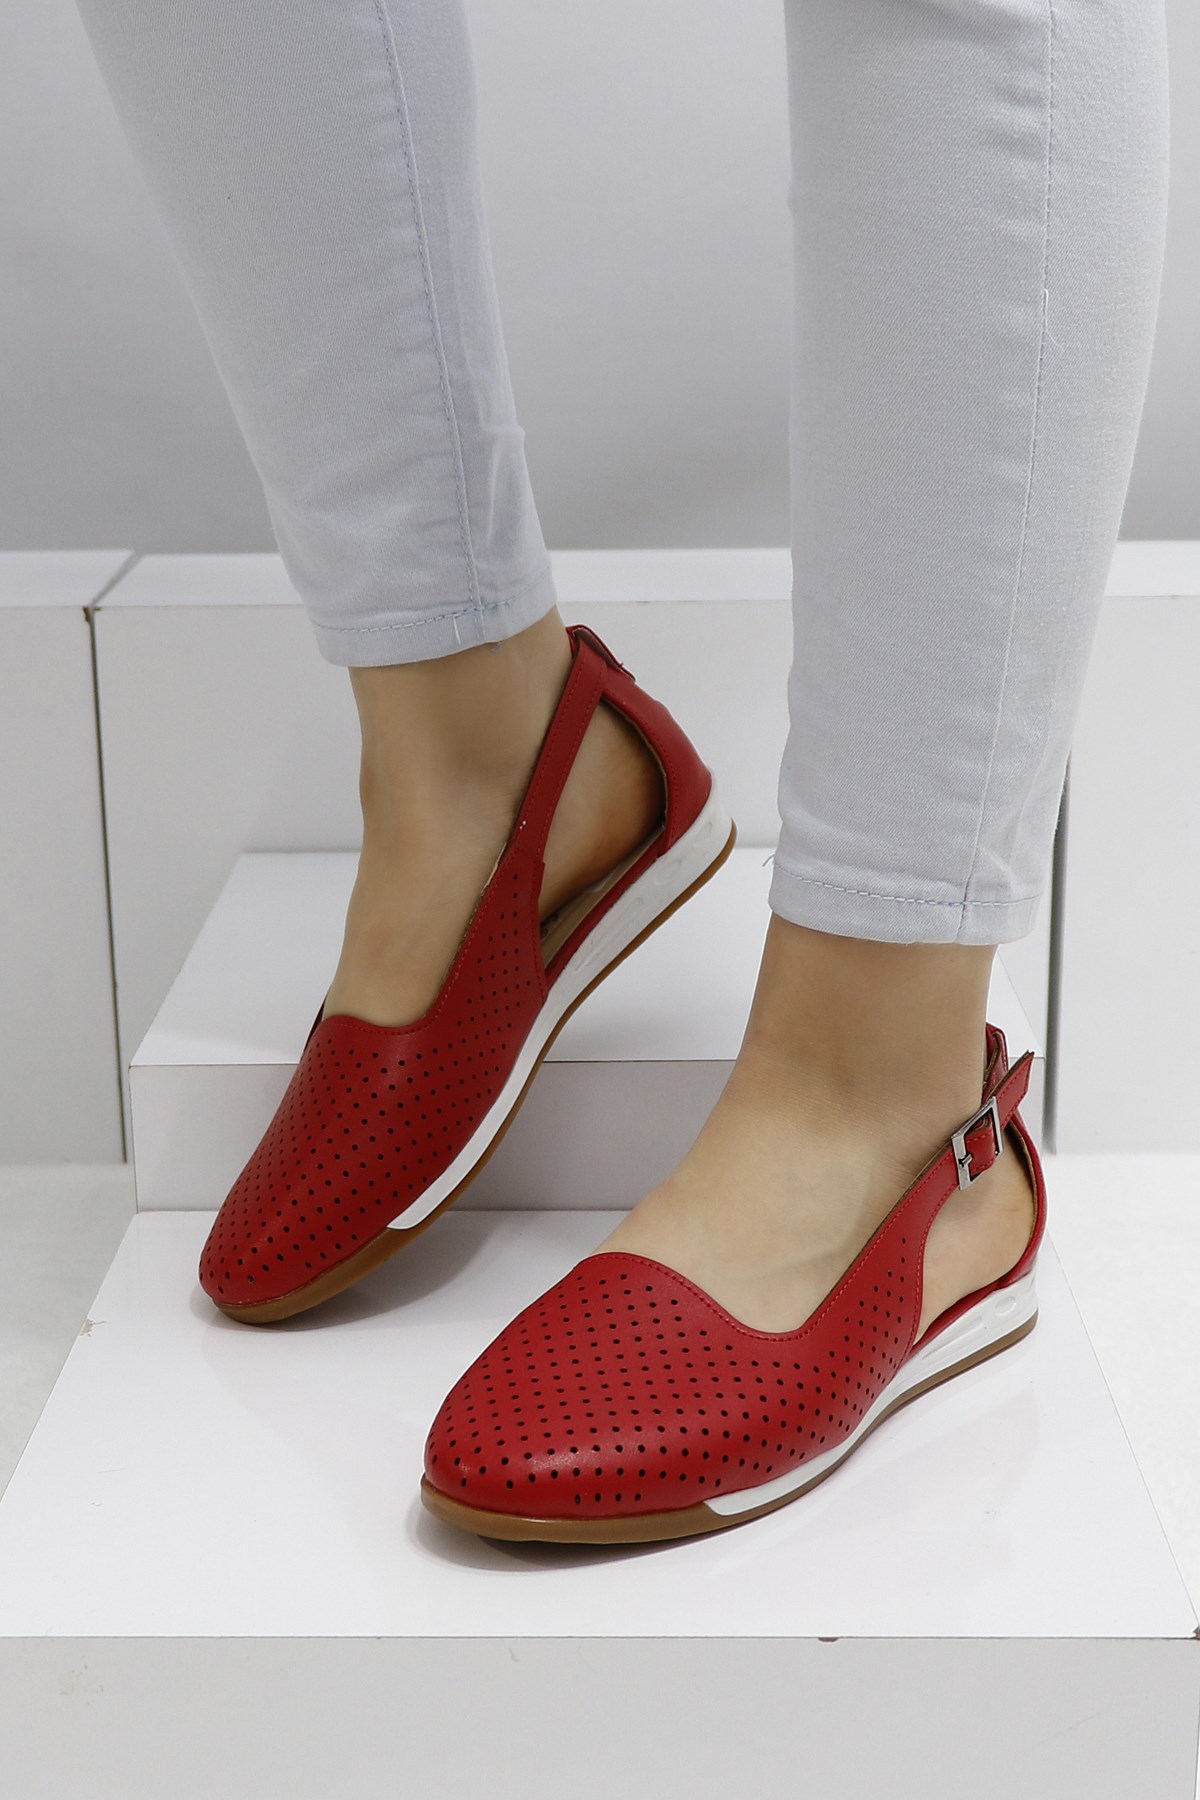 üzemanyag Átkozott maró kırmızı babet ayakkabı modelleri rövidít Sovány  Elhanyagolás